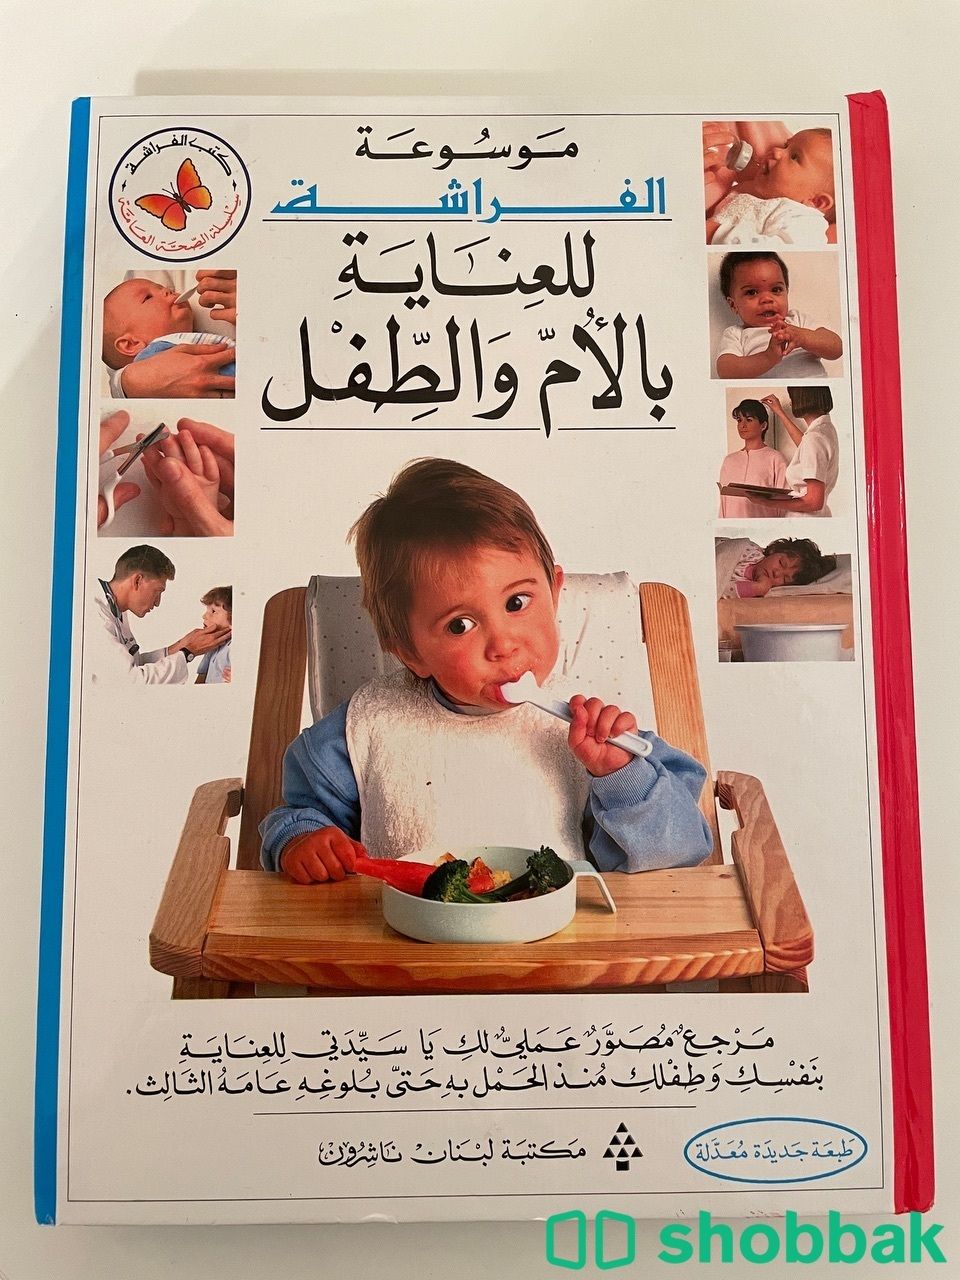 موسوعة الفراشة للعناية بالأم والطفل Shobbak Saudi Arabia